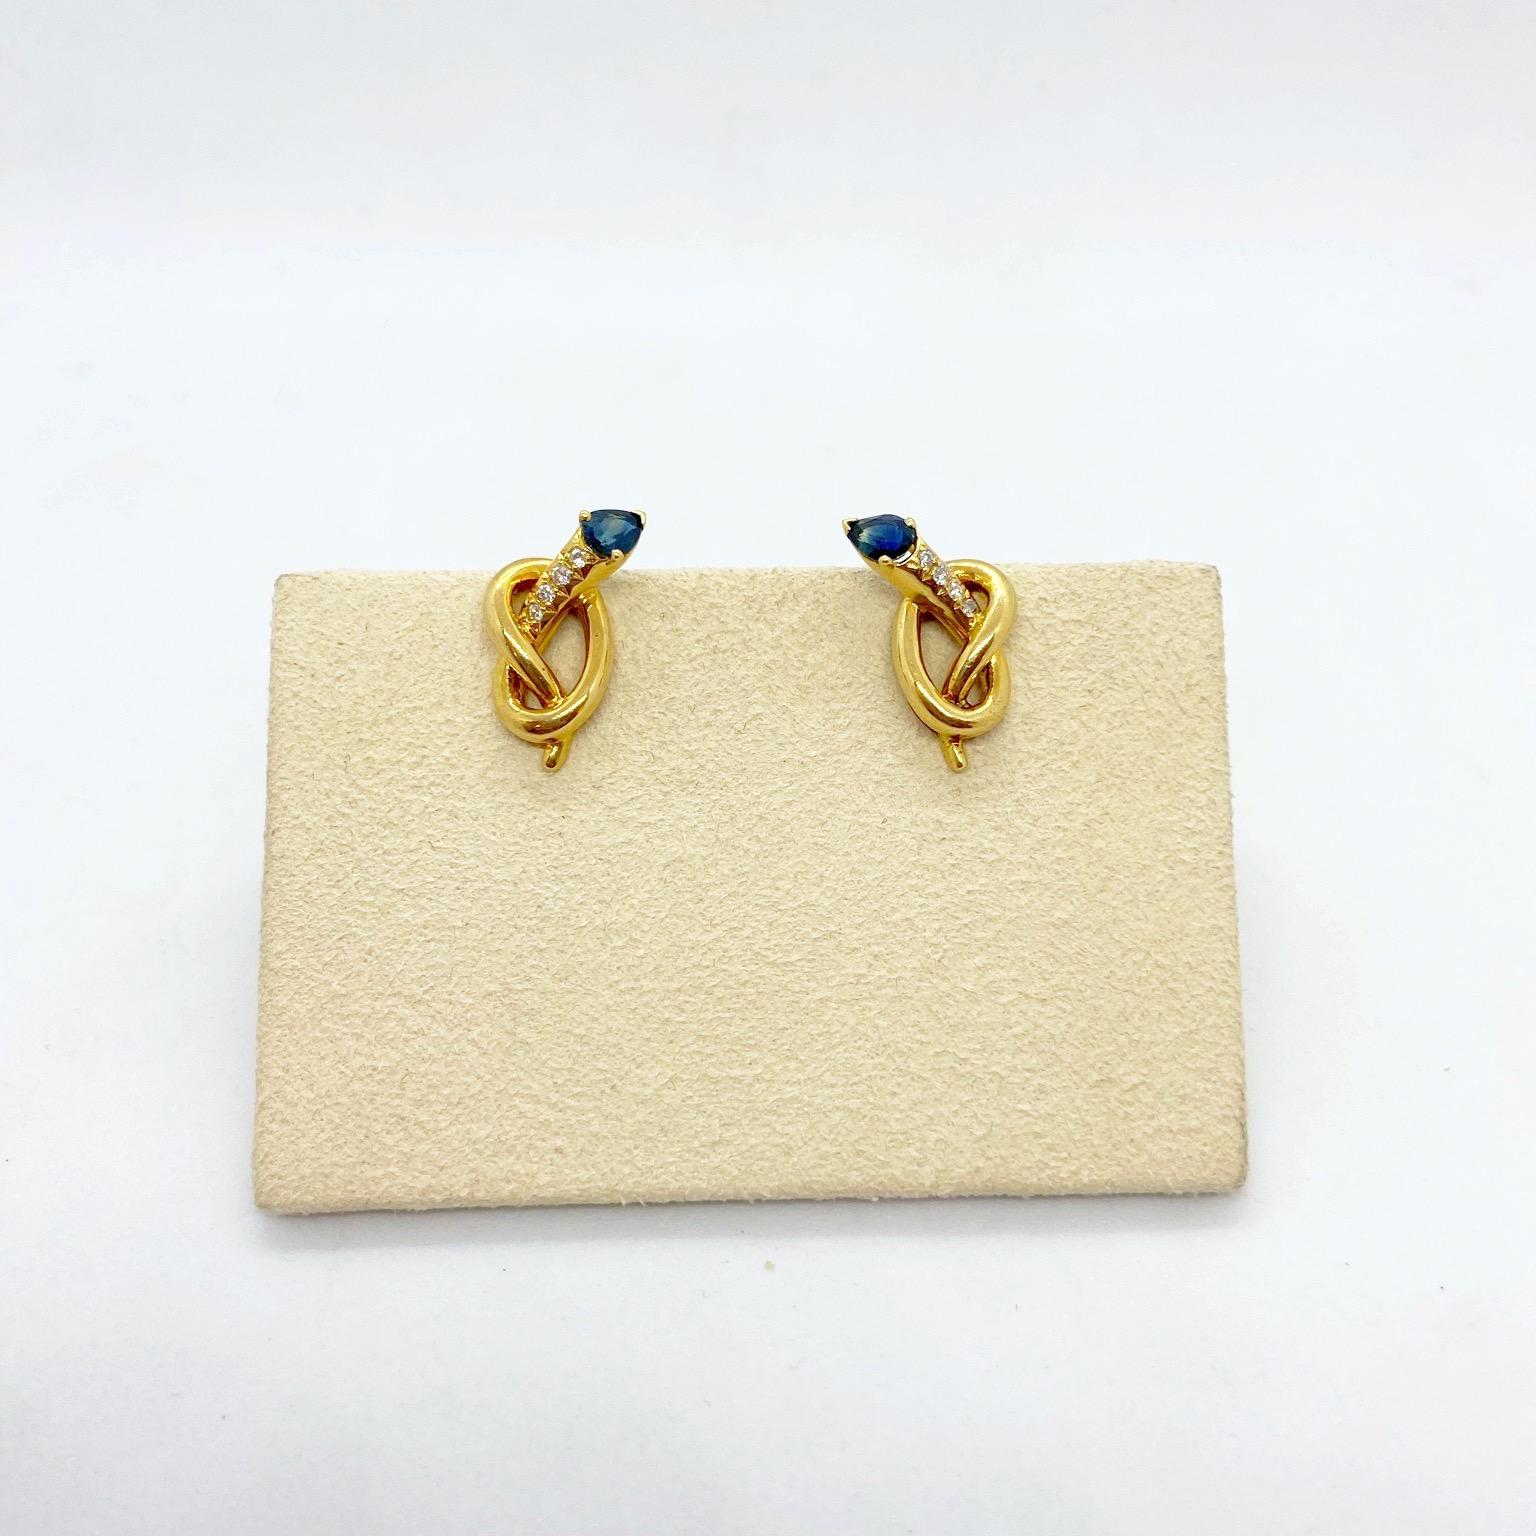 Entworfen von Carrera Y Carrera für Cellini NYC.
Diese Knoten-Ohrringe aus 18 Karat Gelbgold sind mit 0,08 Karat Diamanten besetzt. Jede Spitze ist mit einem birnenförmigen blauen Saphir von 0,90 Karat besetzt. Die Ohrringe sind zum Anstecken, es